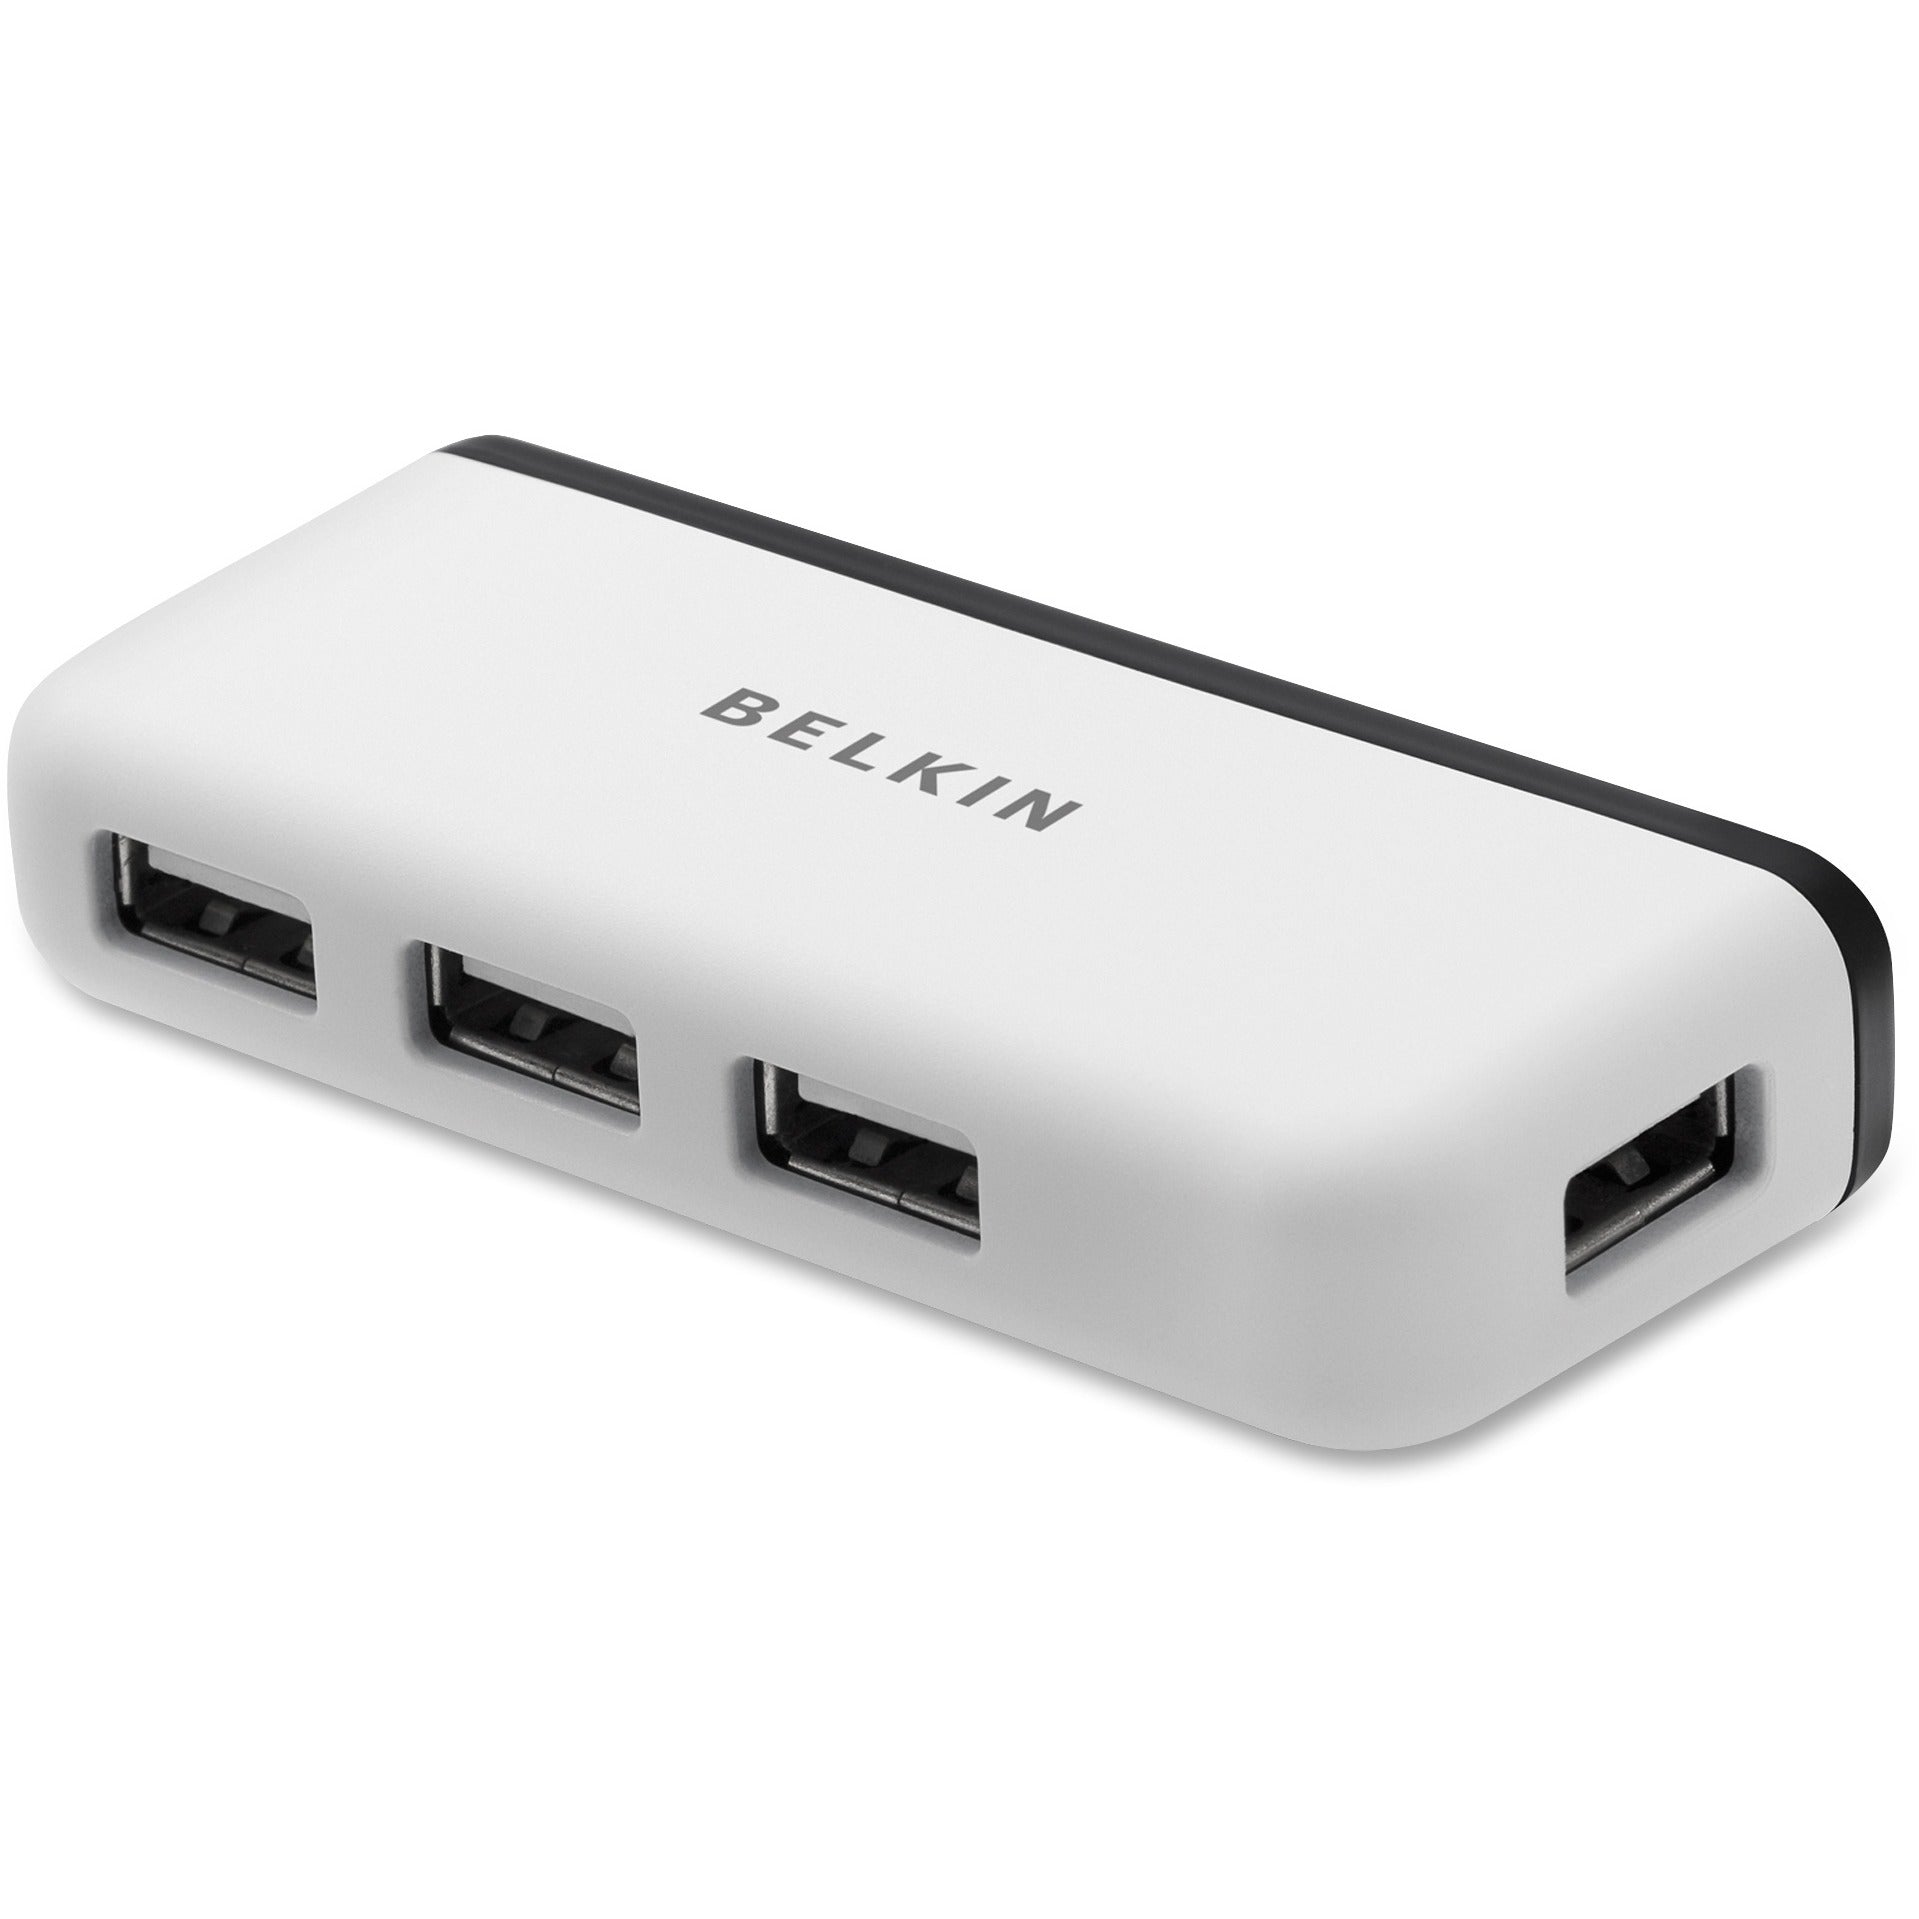 Belkin 4-Port Travel Hub - USB - External - 4 USB Port(s) - 4 USB 2.0 Port(s) - Mac - 